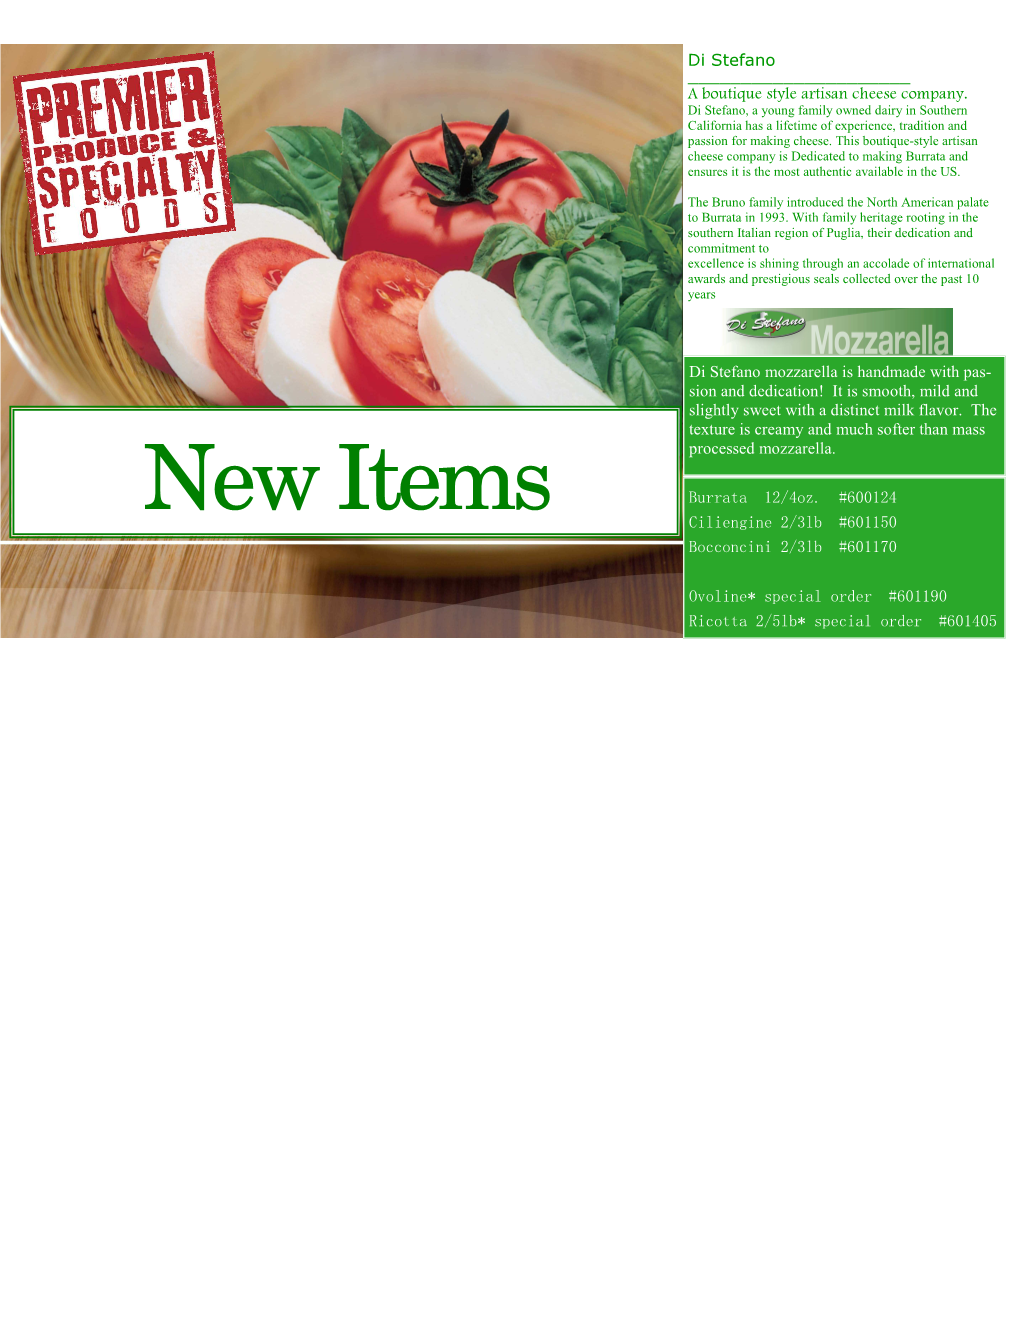 New Items Burrata 12/4Oz